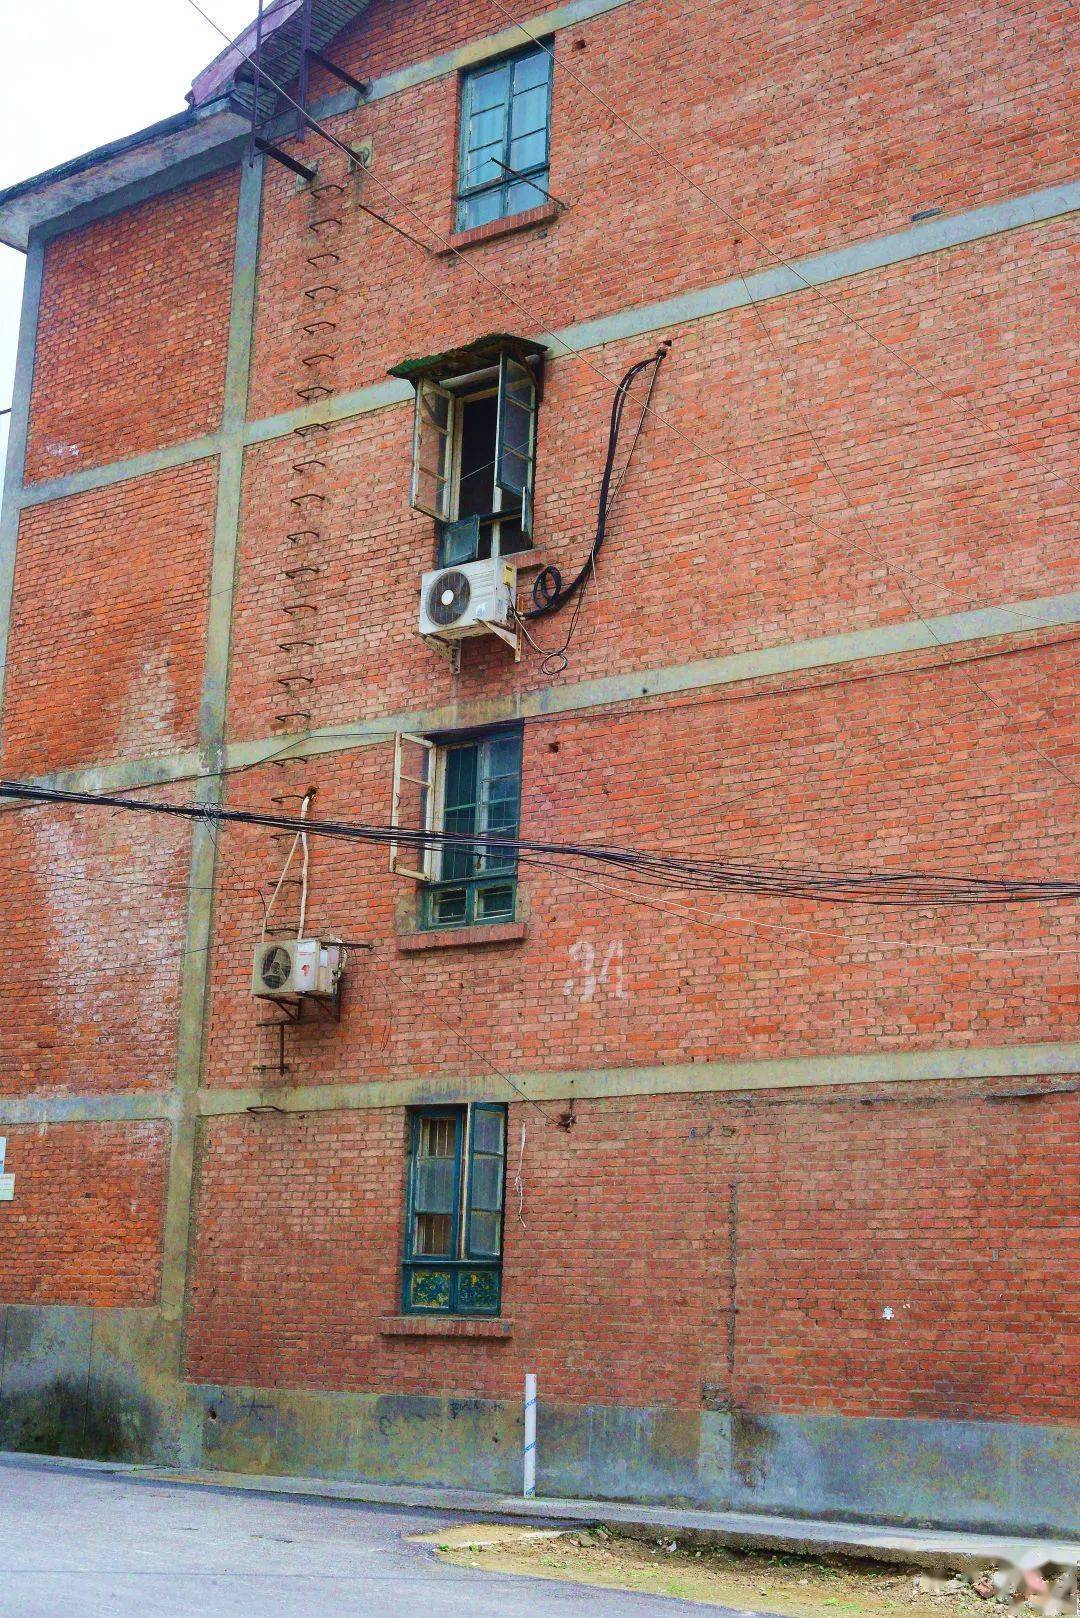 老厂房窗户图片